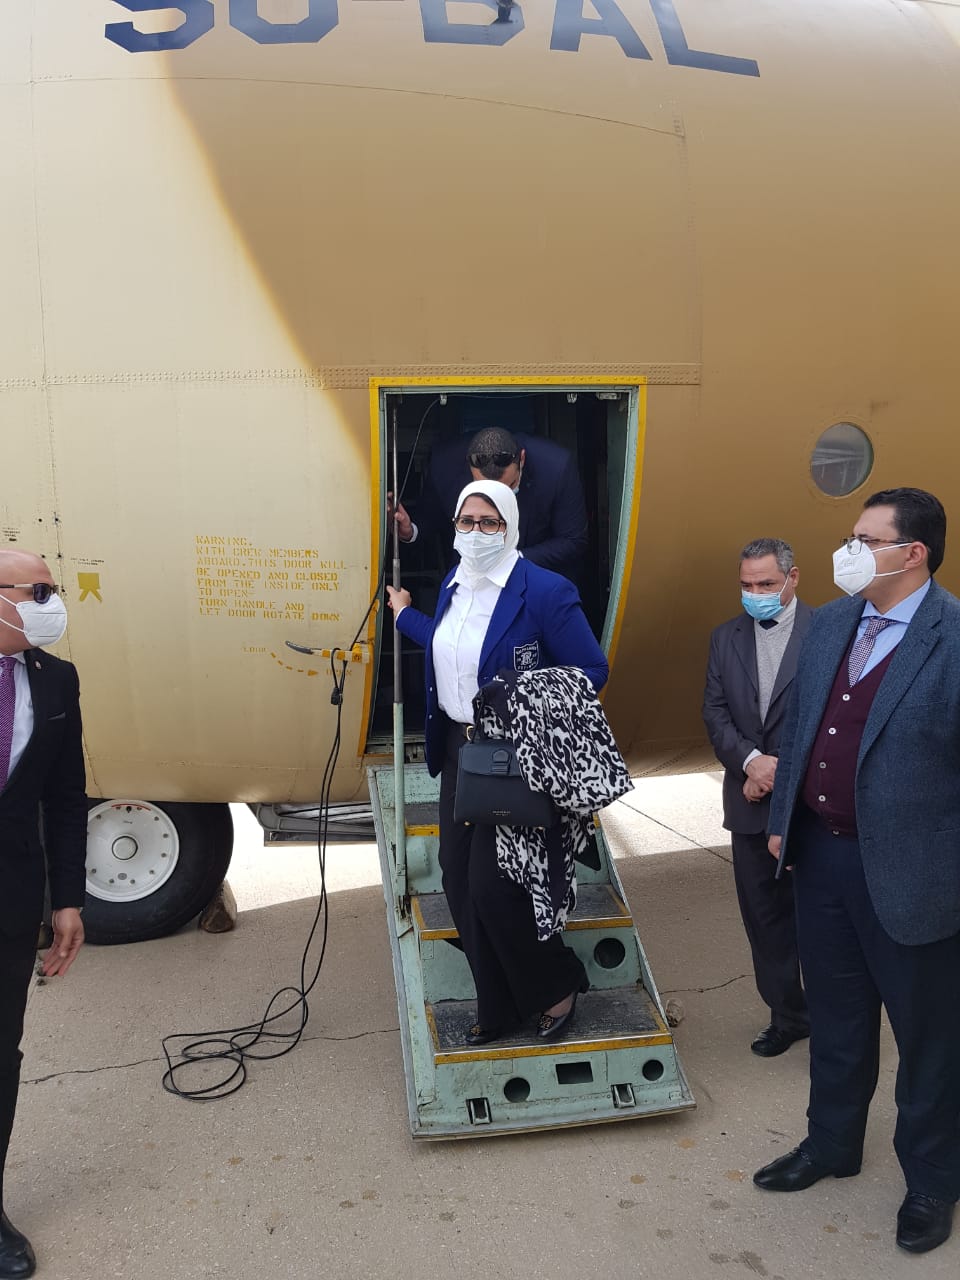   وصول وزيرة الصحة إلى لبنان لتقديم المساعدات الطبية